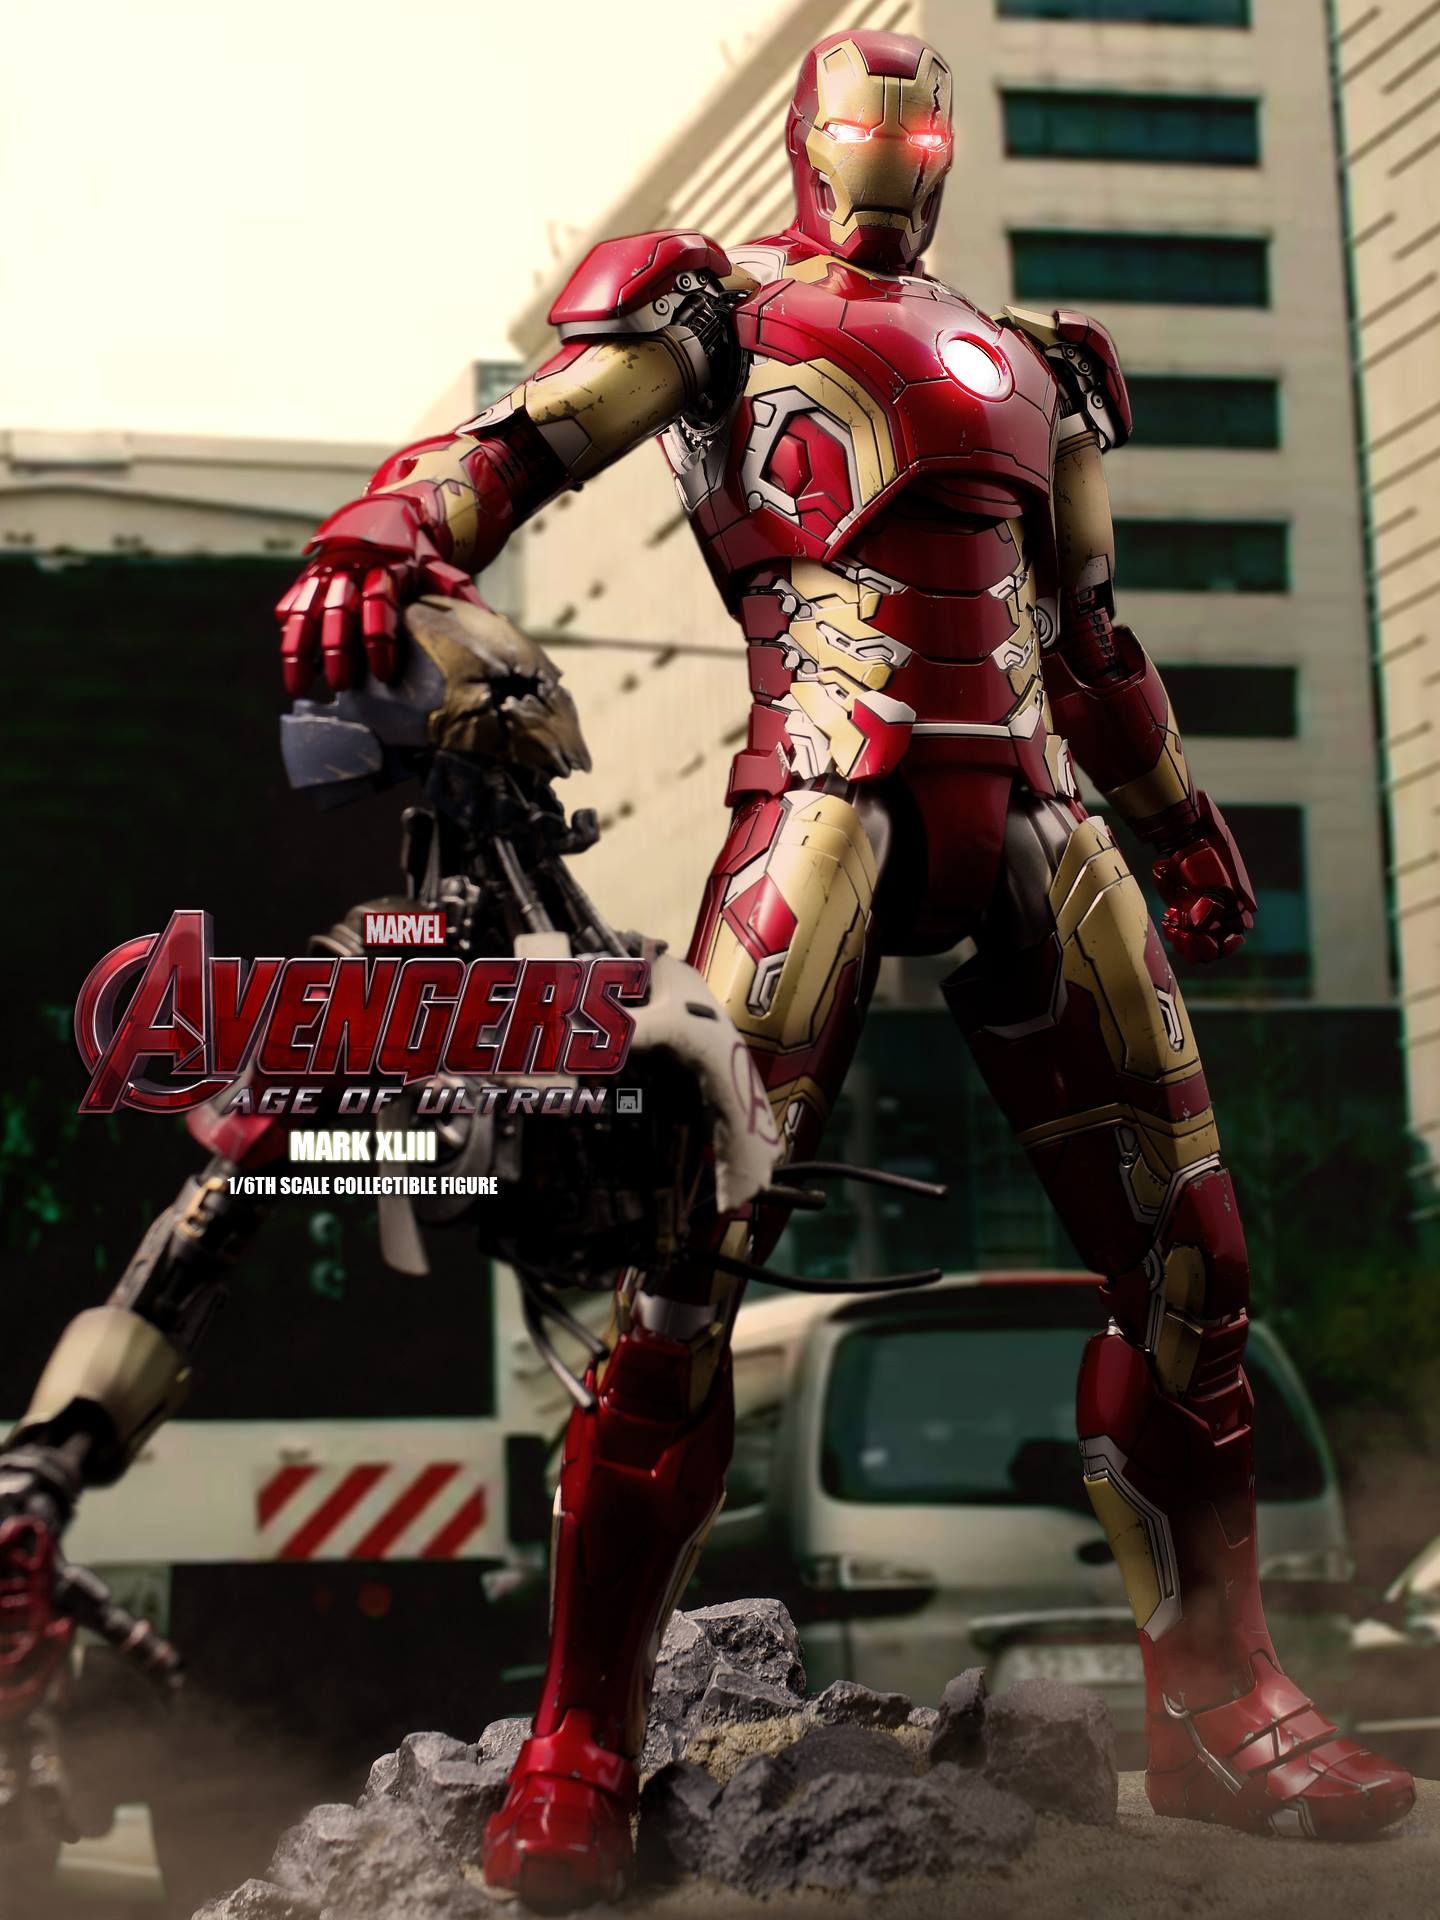 Avengers 2 Iron Man Mark XLIII Action Figure Photo 2